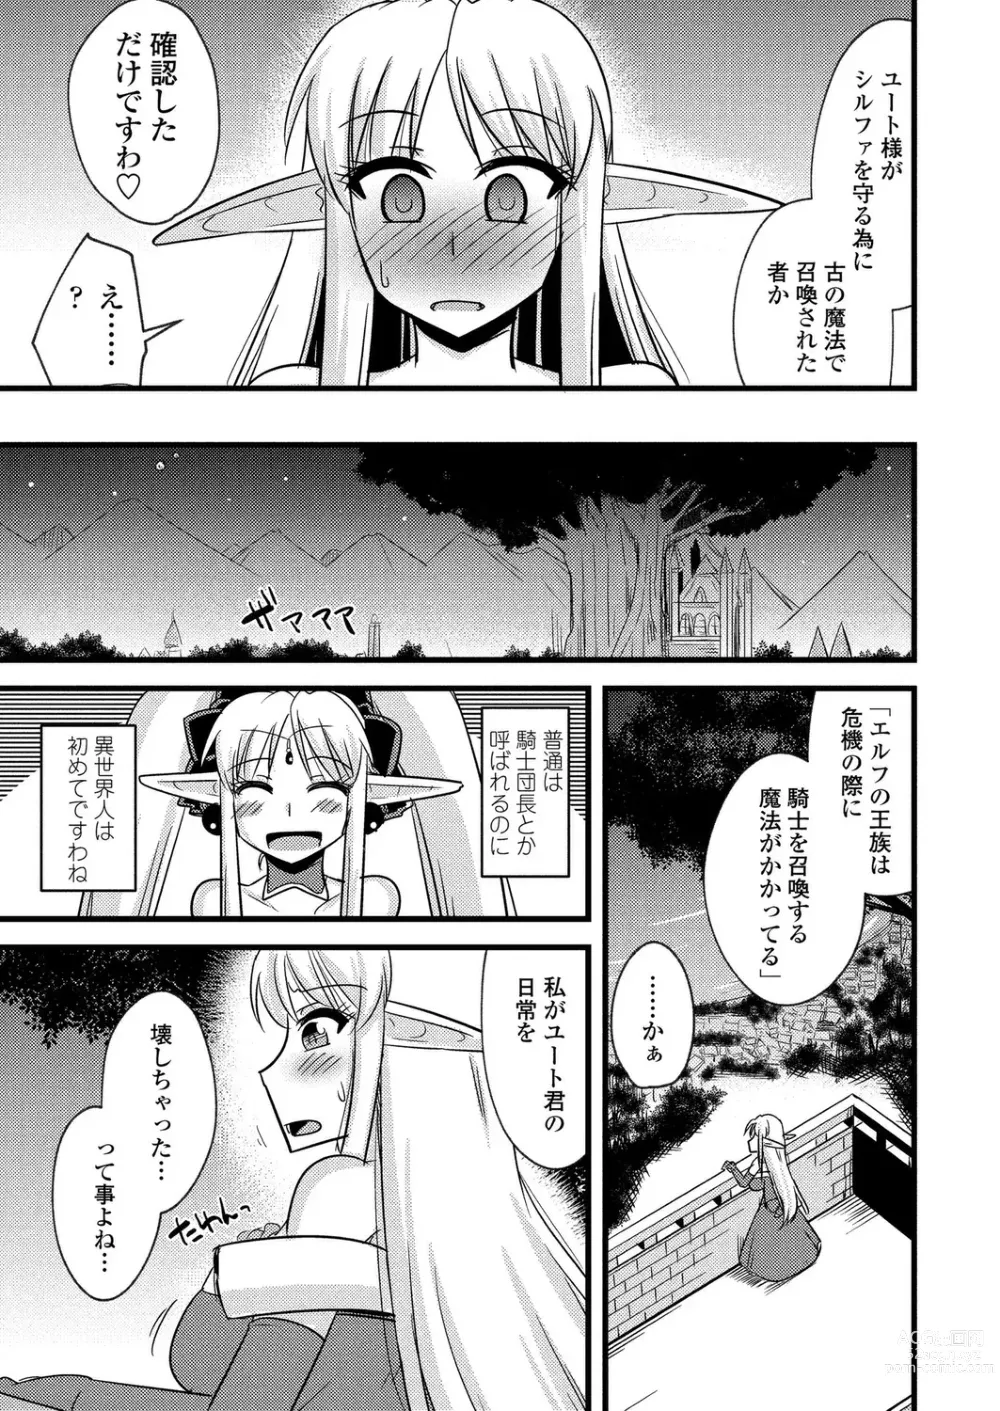 Page 178 of manga BugBug 2023-08